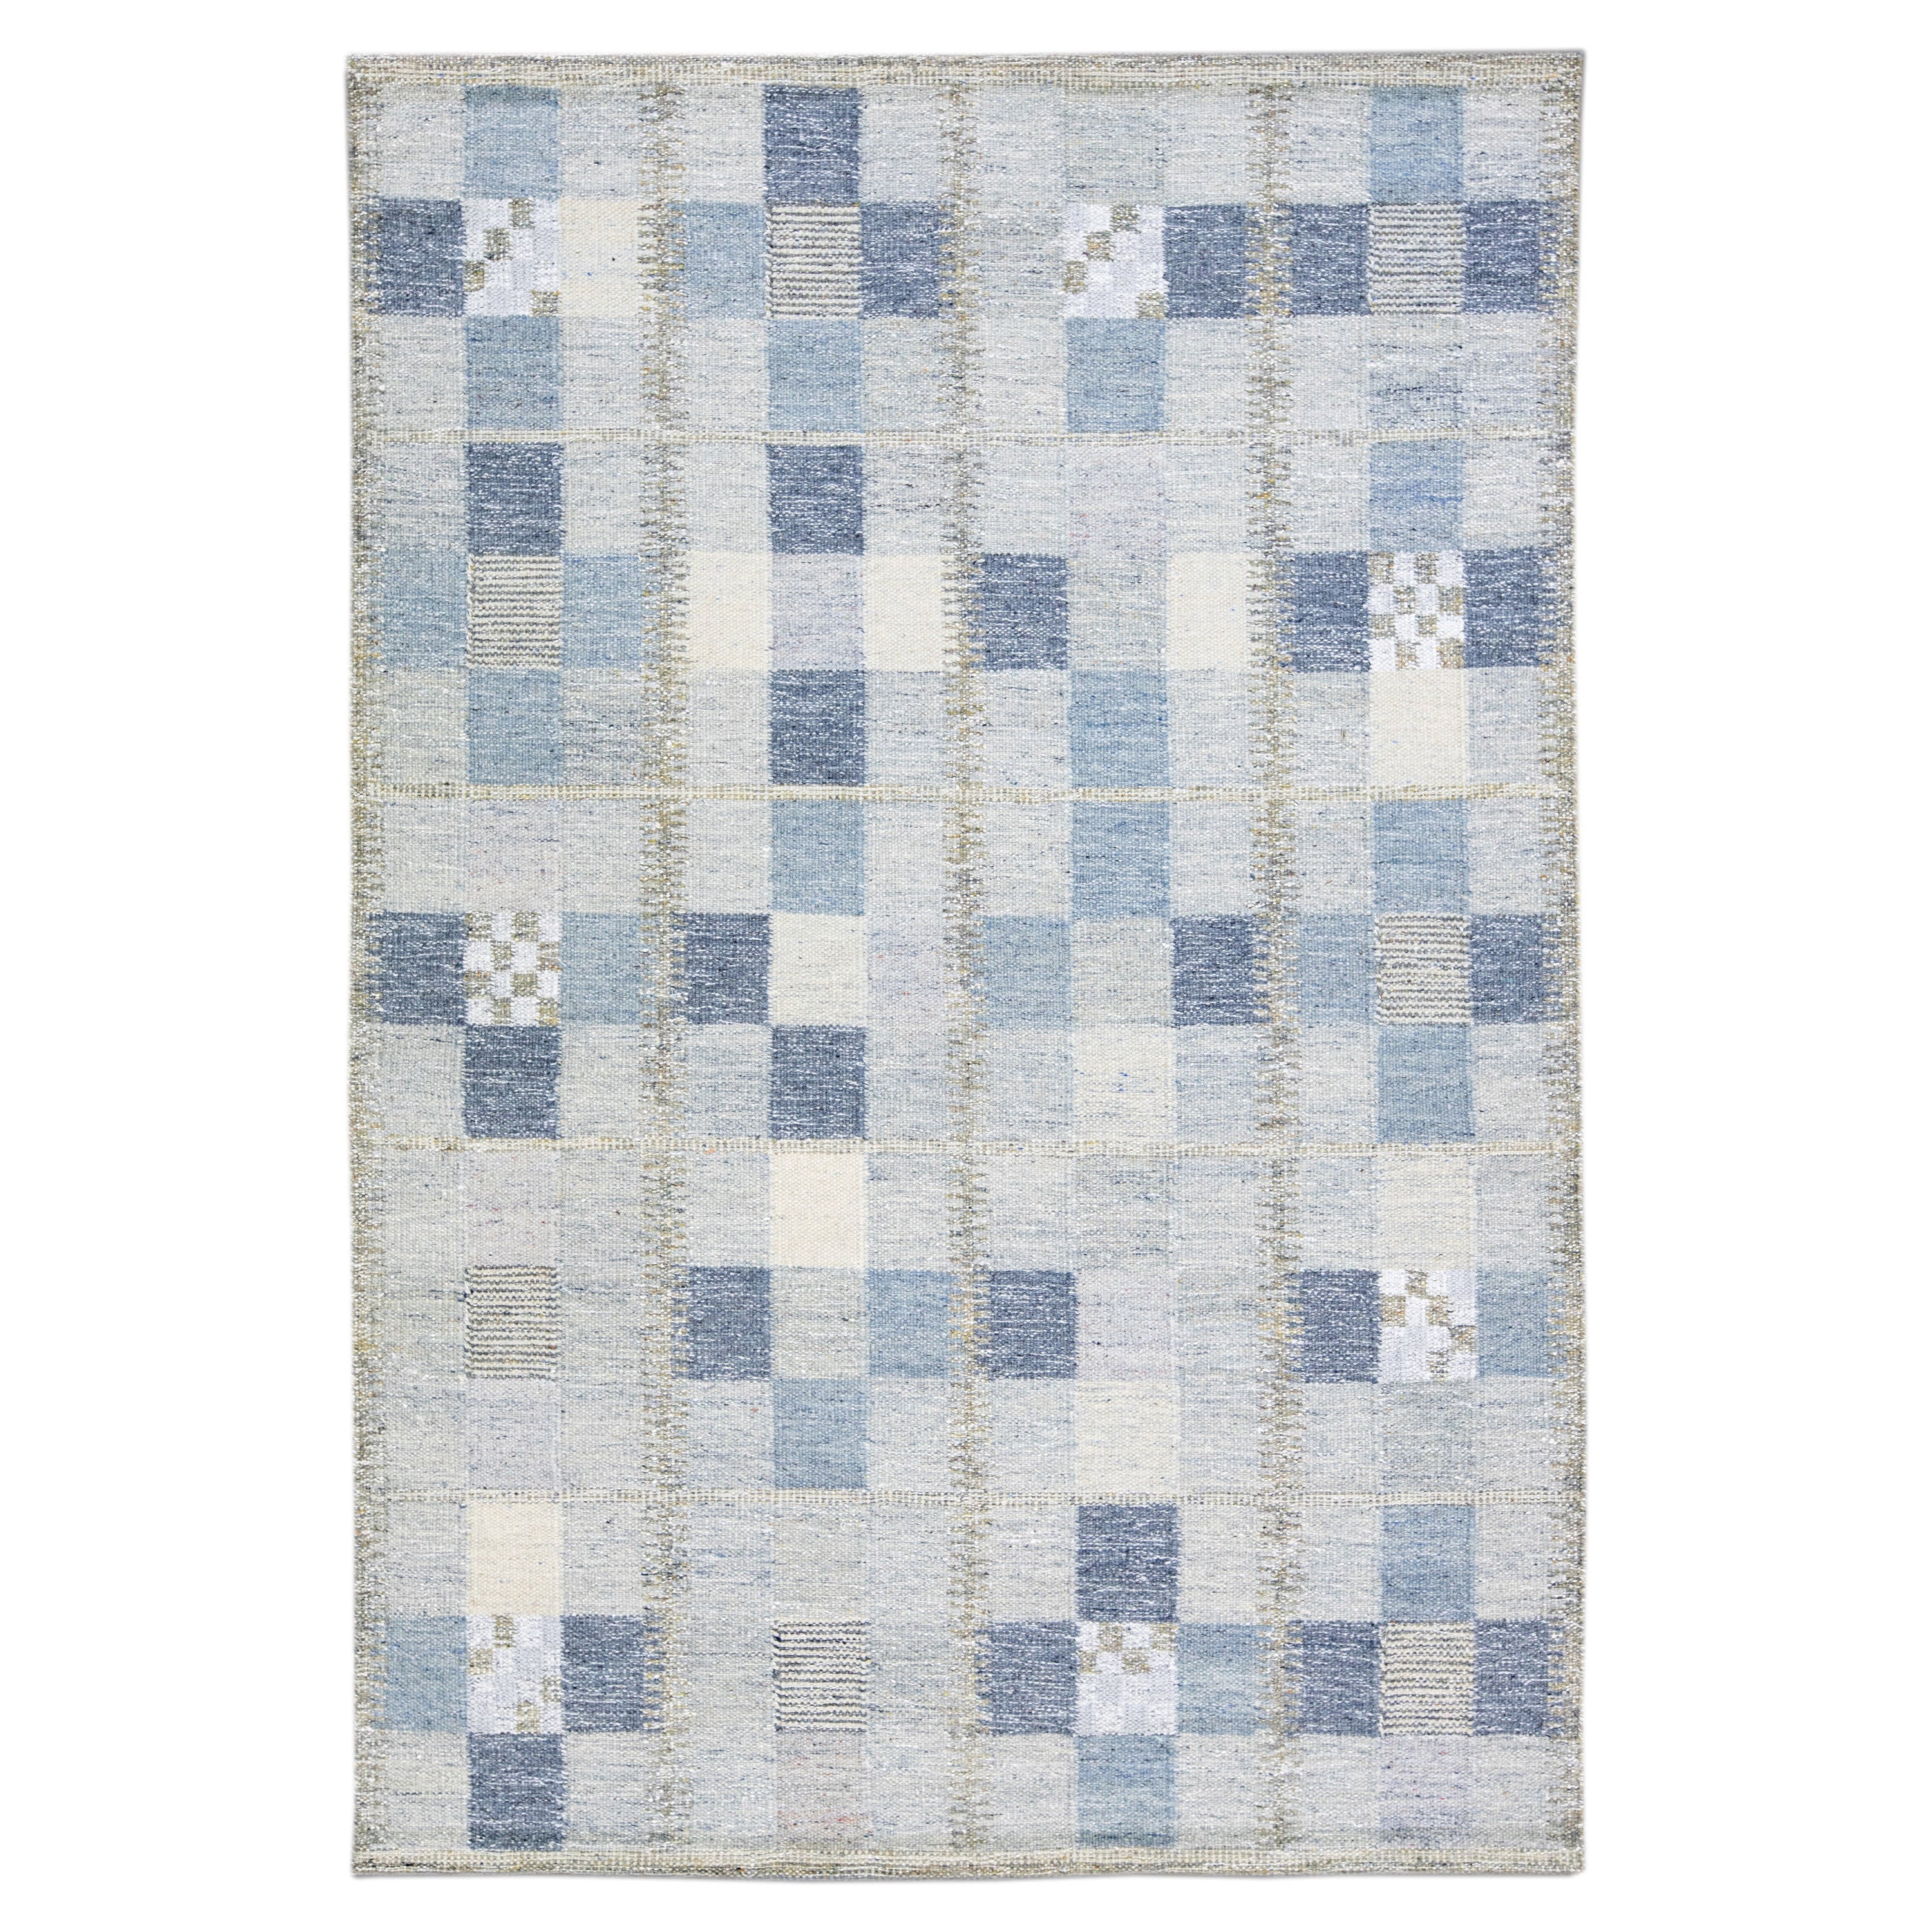 Tapis scandinave moderne bleu et gris en laine, fait à la main, de taille géométrique pour une pièce en vente